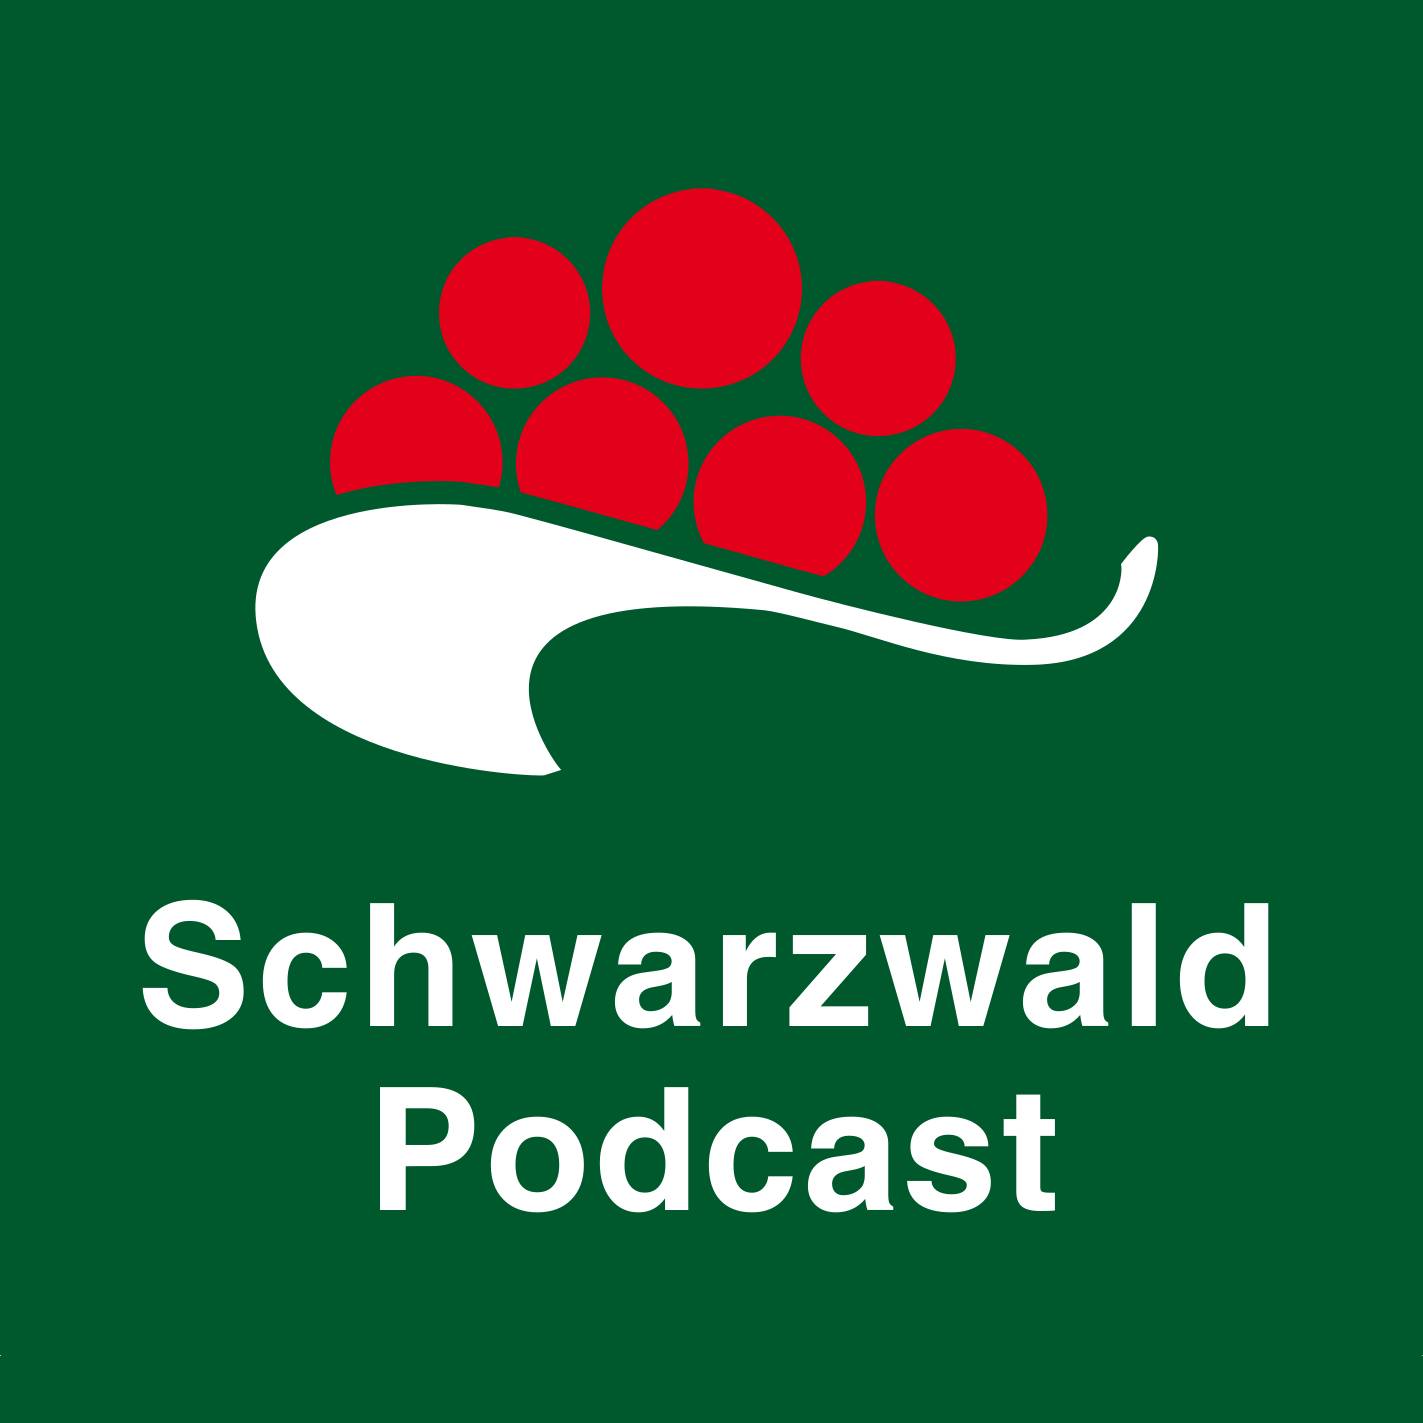 Schwarzwald Podcast Logo